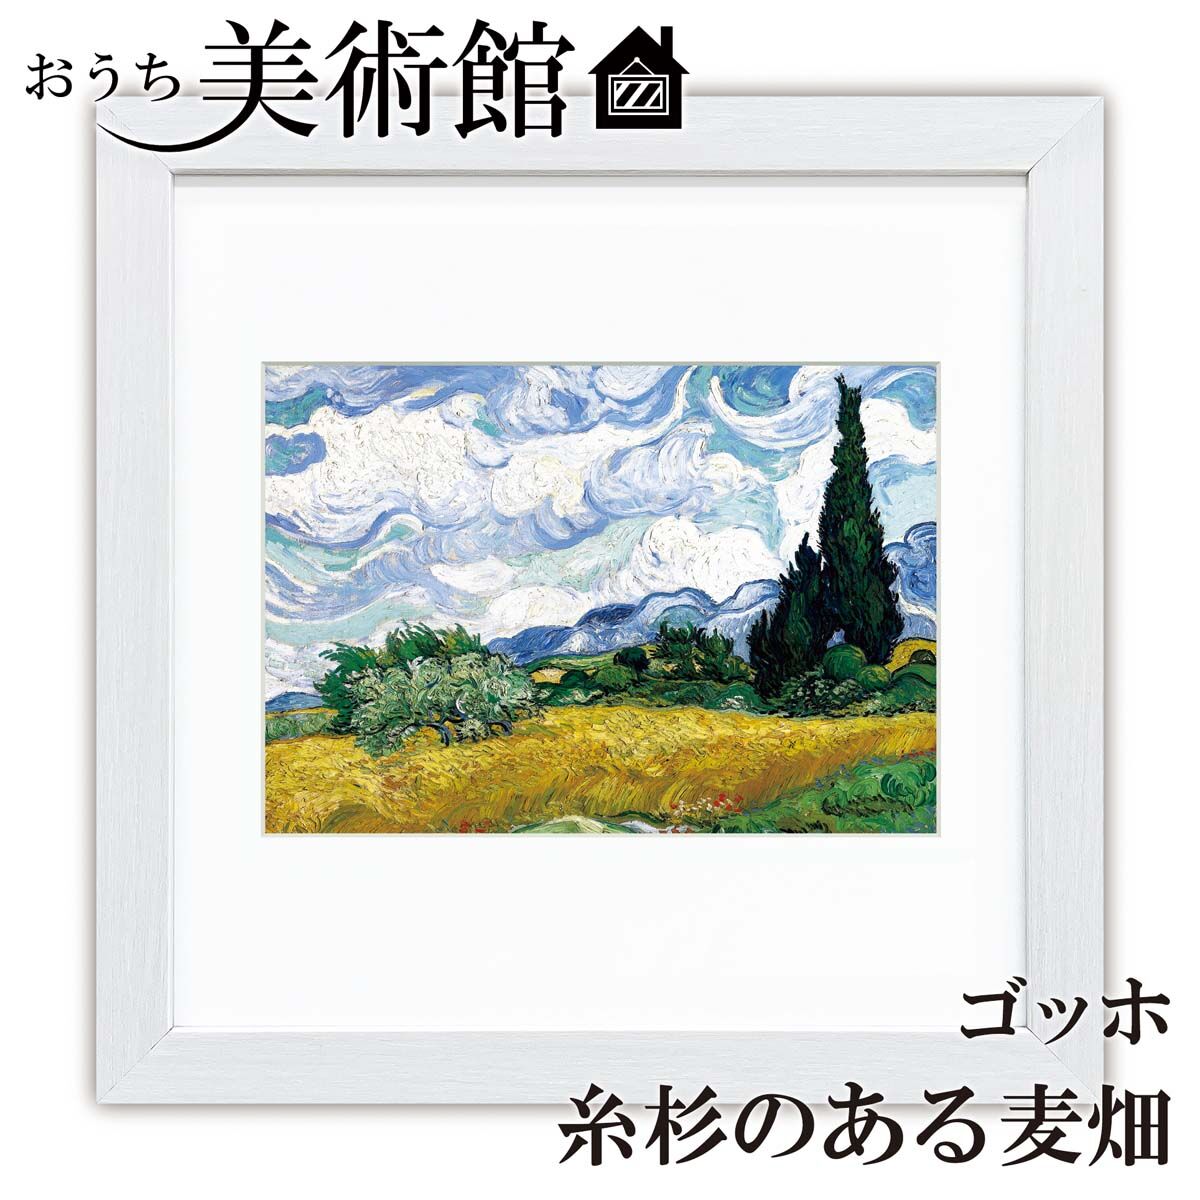 風景画 作家 オリバー 作品名 糸杉のある242/250 額サイズ55x43c 